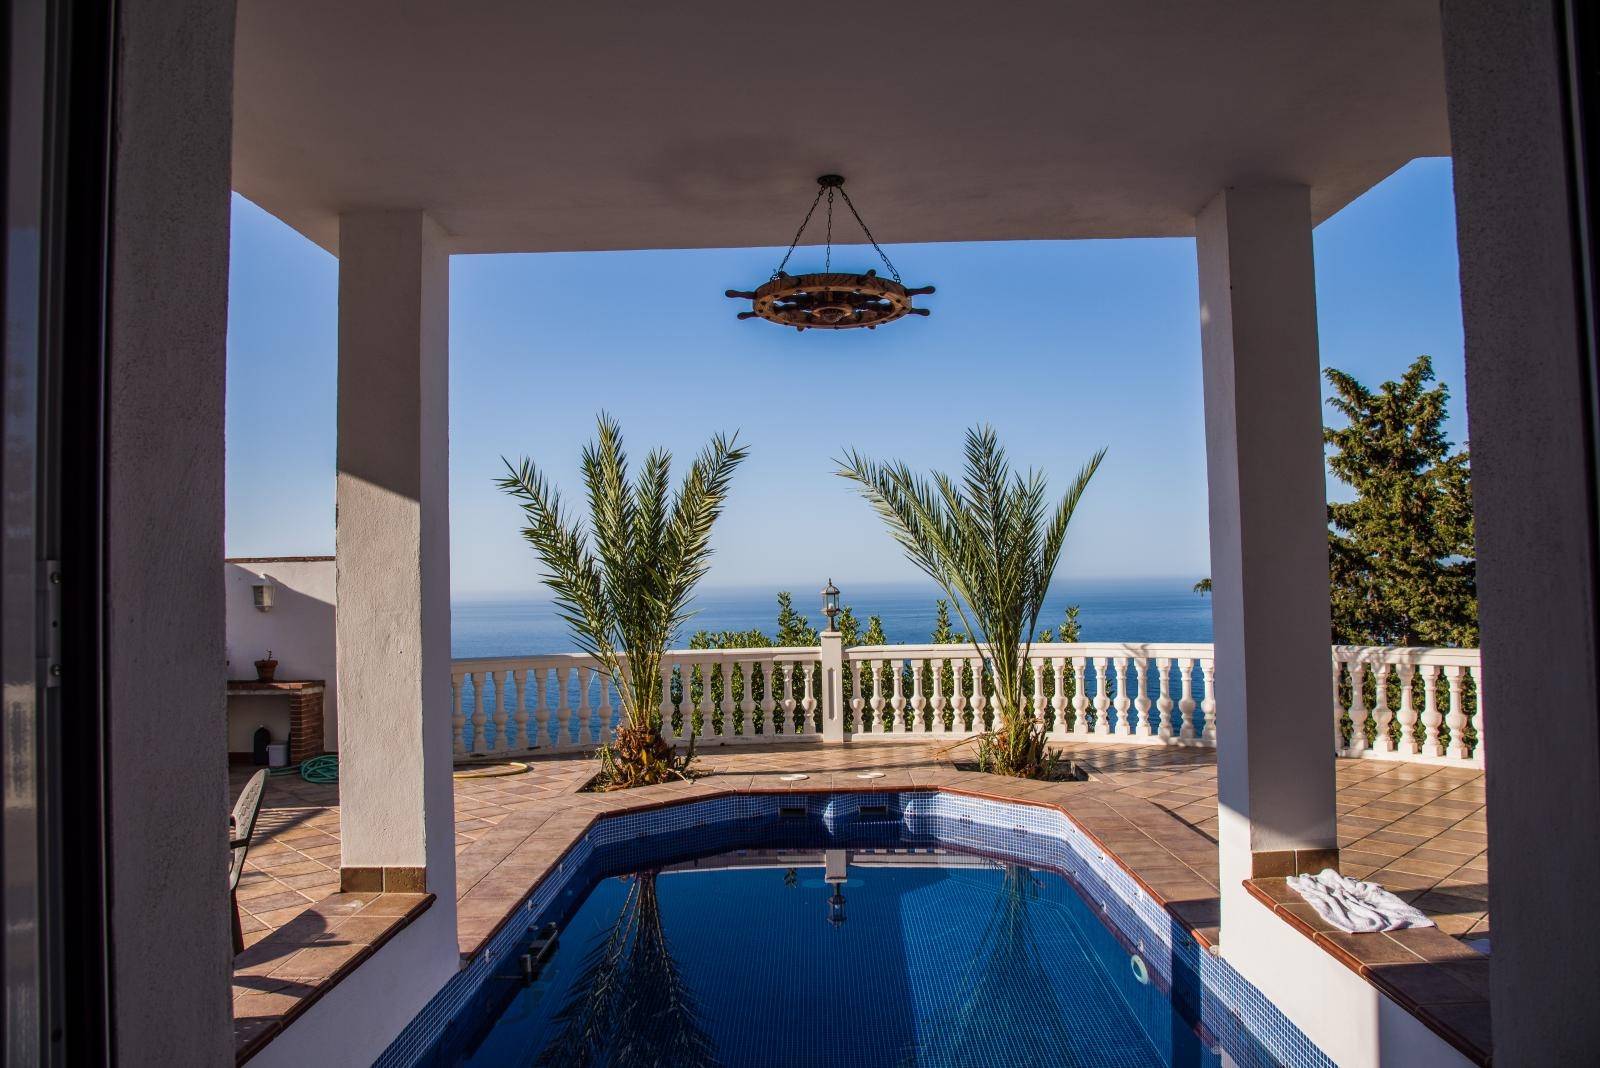 Maravillosa villa en venta en Urb. Alfamar, con increíbles vistas al mar!